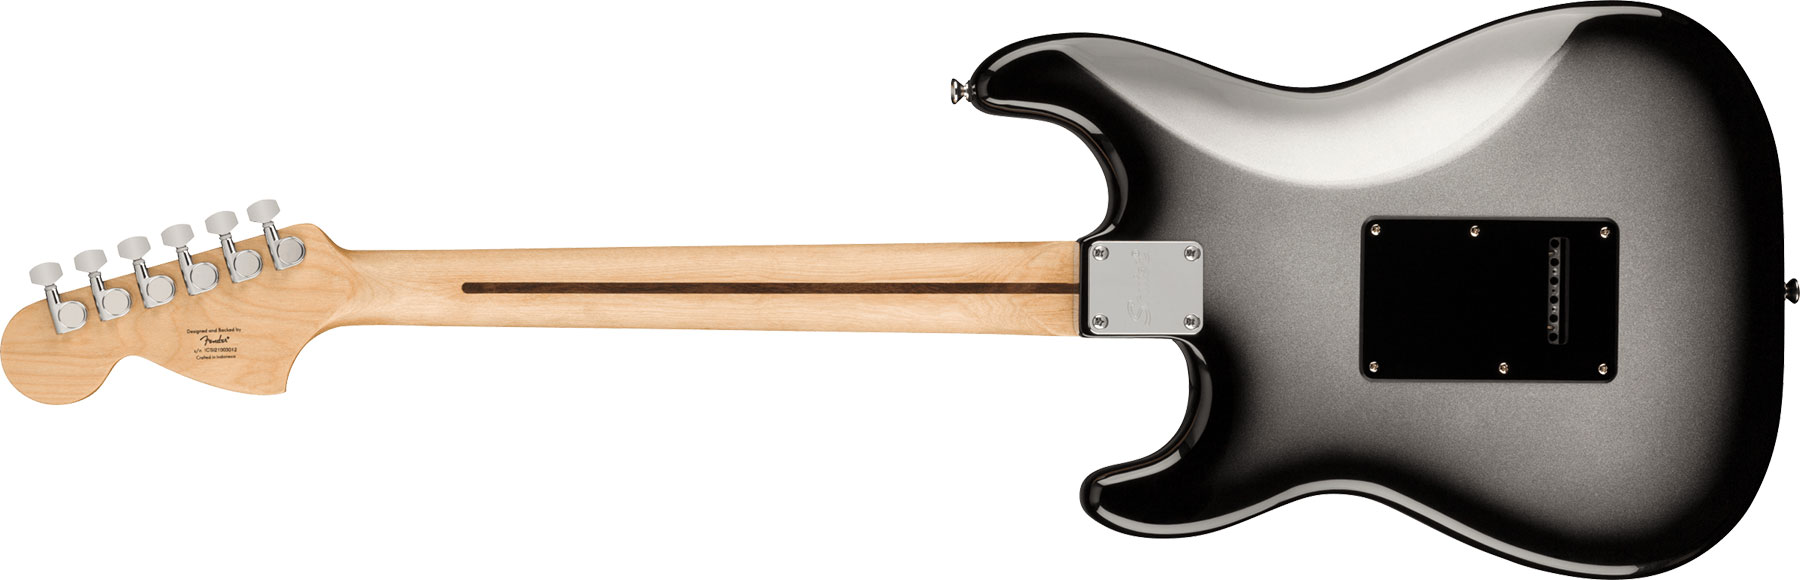 Squier Strat Affinity Fsr Ltd Hss Trem Lau - Silverburst - Elektrische gitaar in Str-vorm - Variation 1